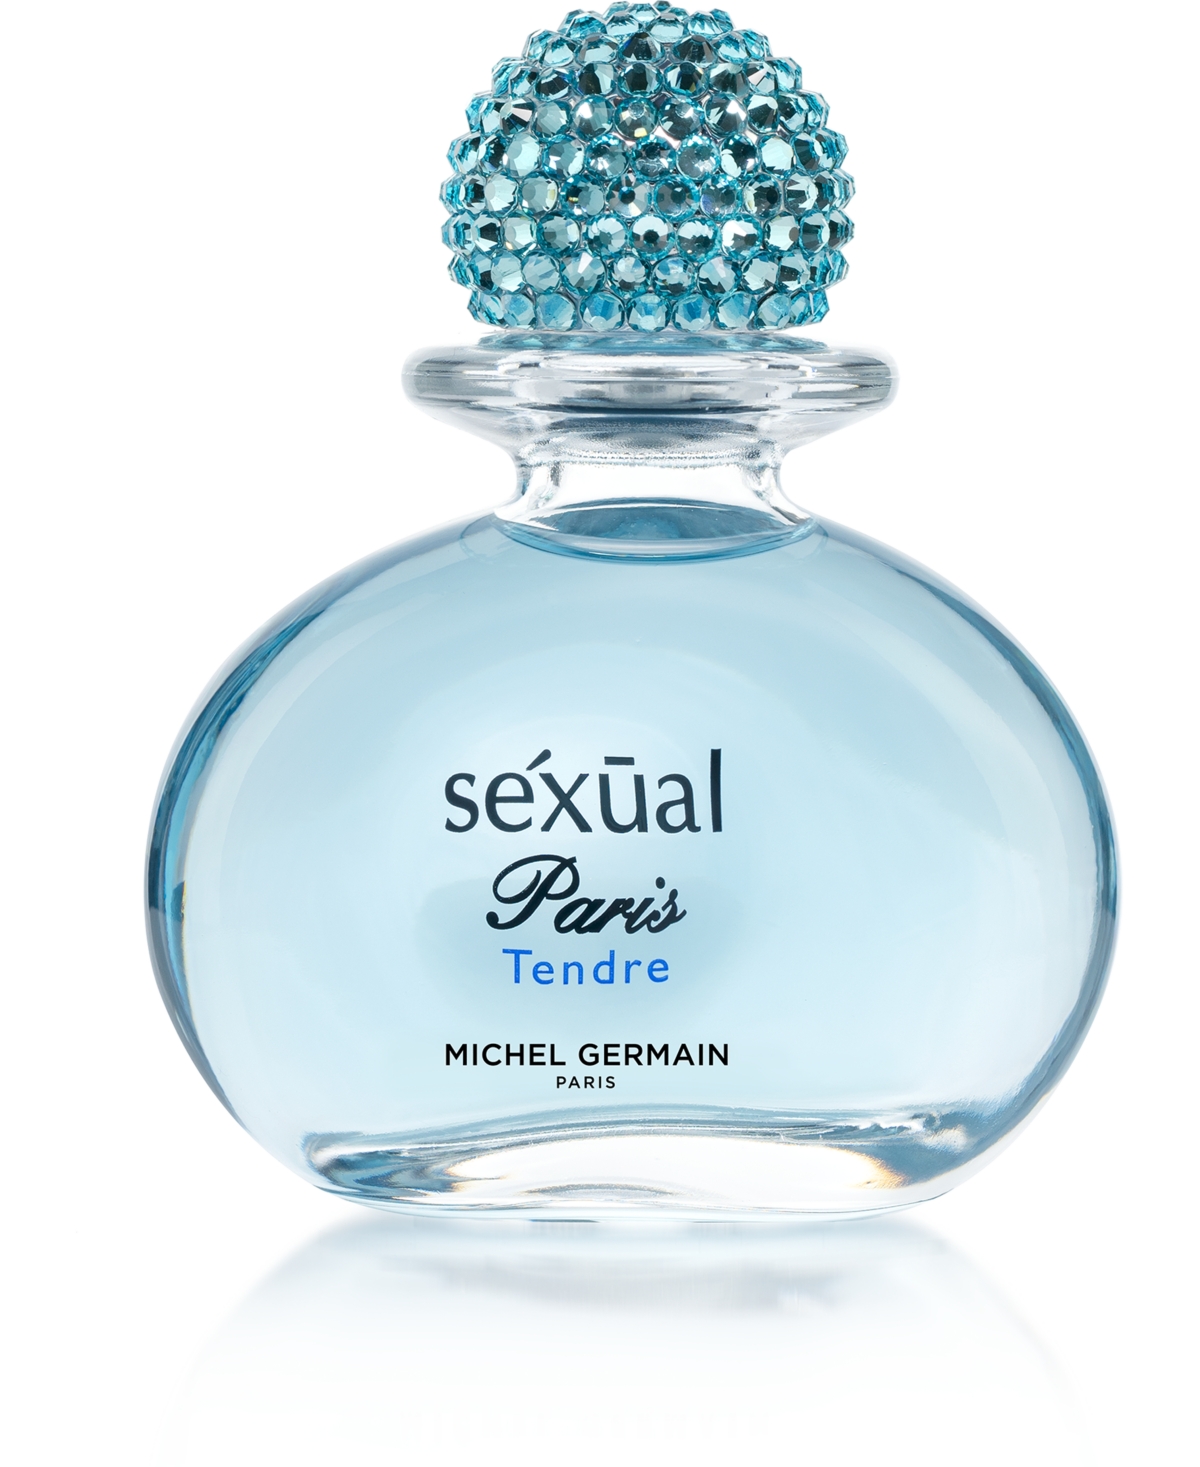 Lady's Sexual Paris Tendre Eau de Parfum Spray, 2.5 oz.